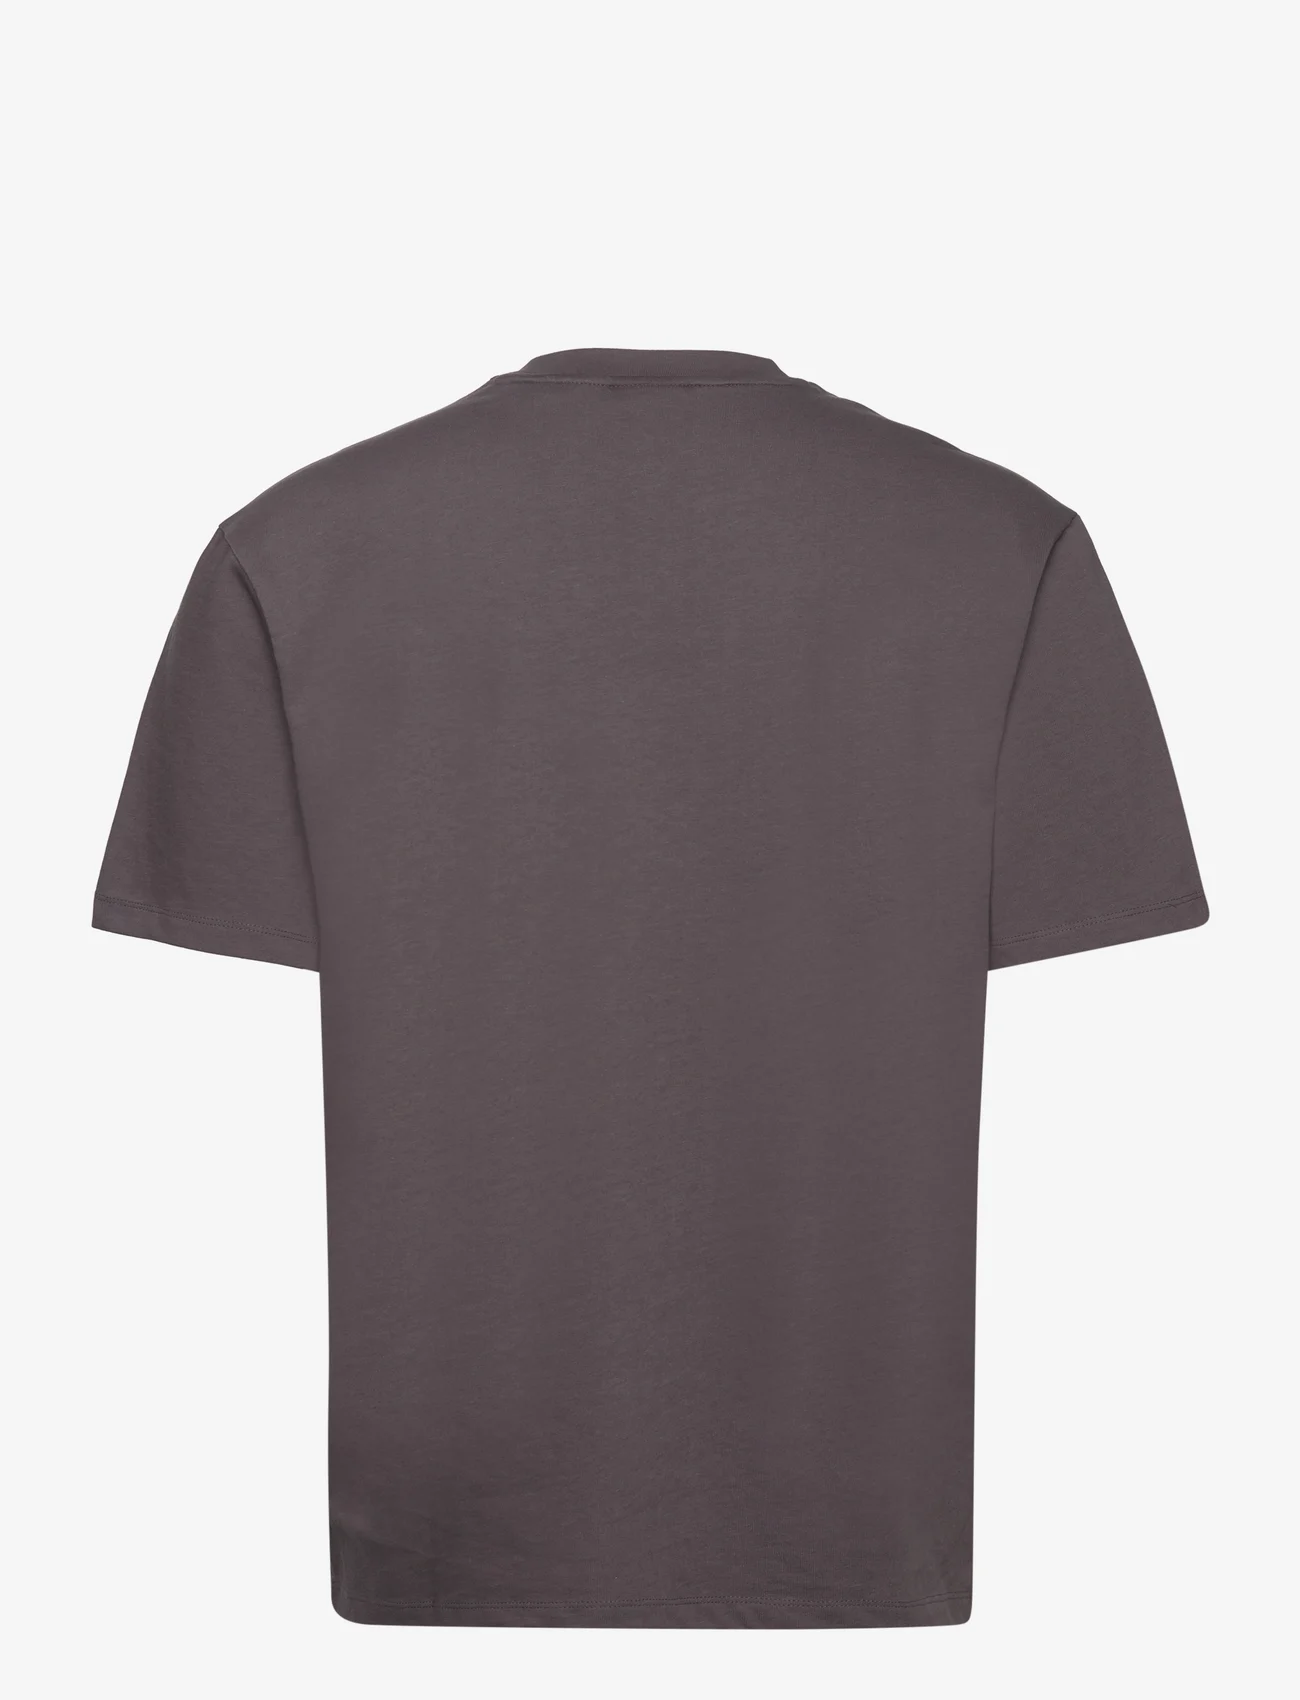 HUGO - Dapolino - basic t-shirts - dark grey - 1